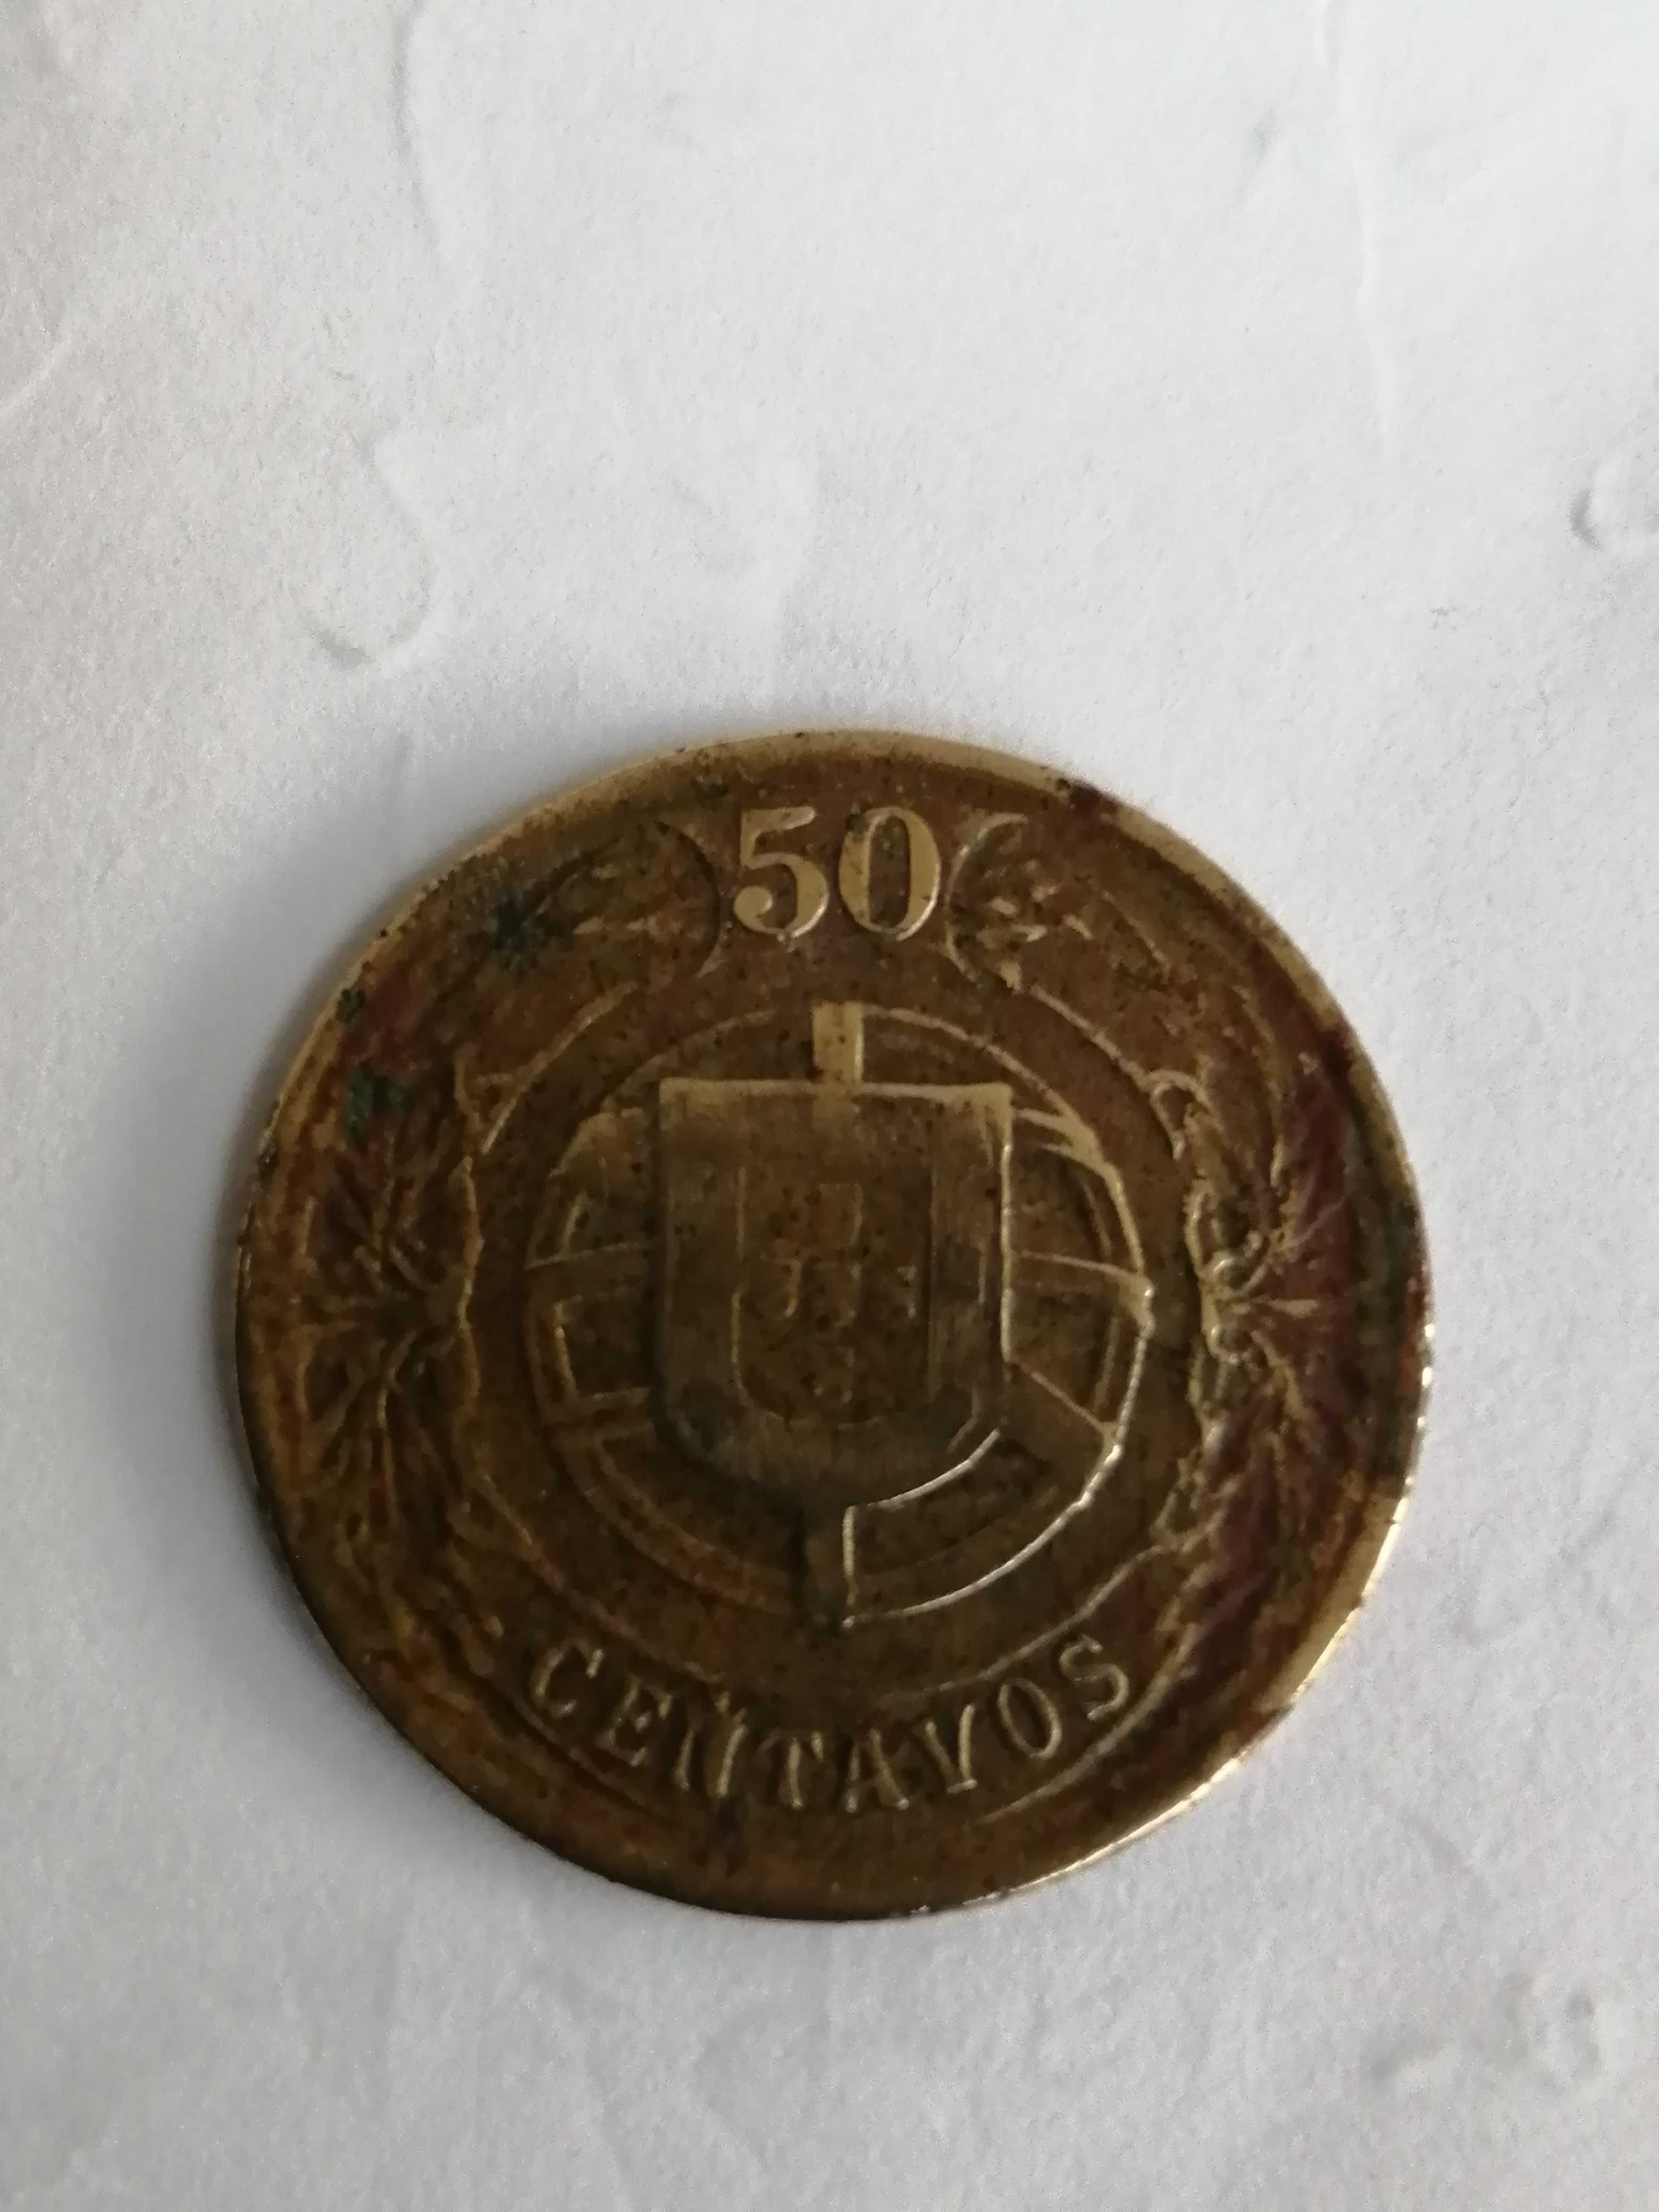 Moedas difíceis de alumínio, bronze, 50 centavos 1924 e 1 escudo 1926.